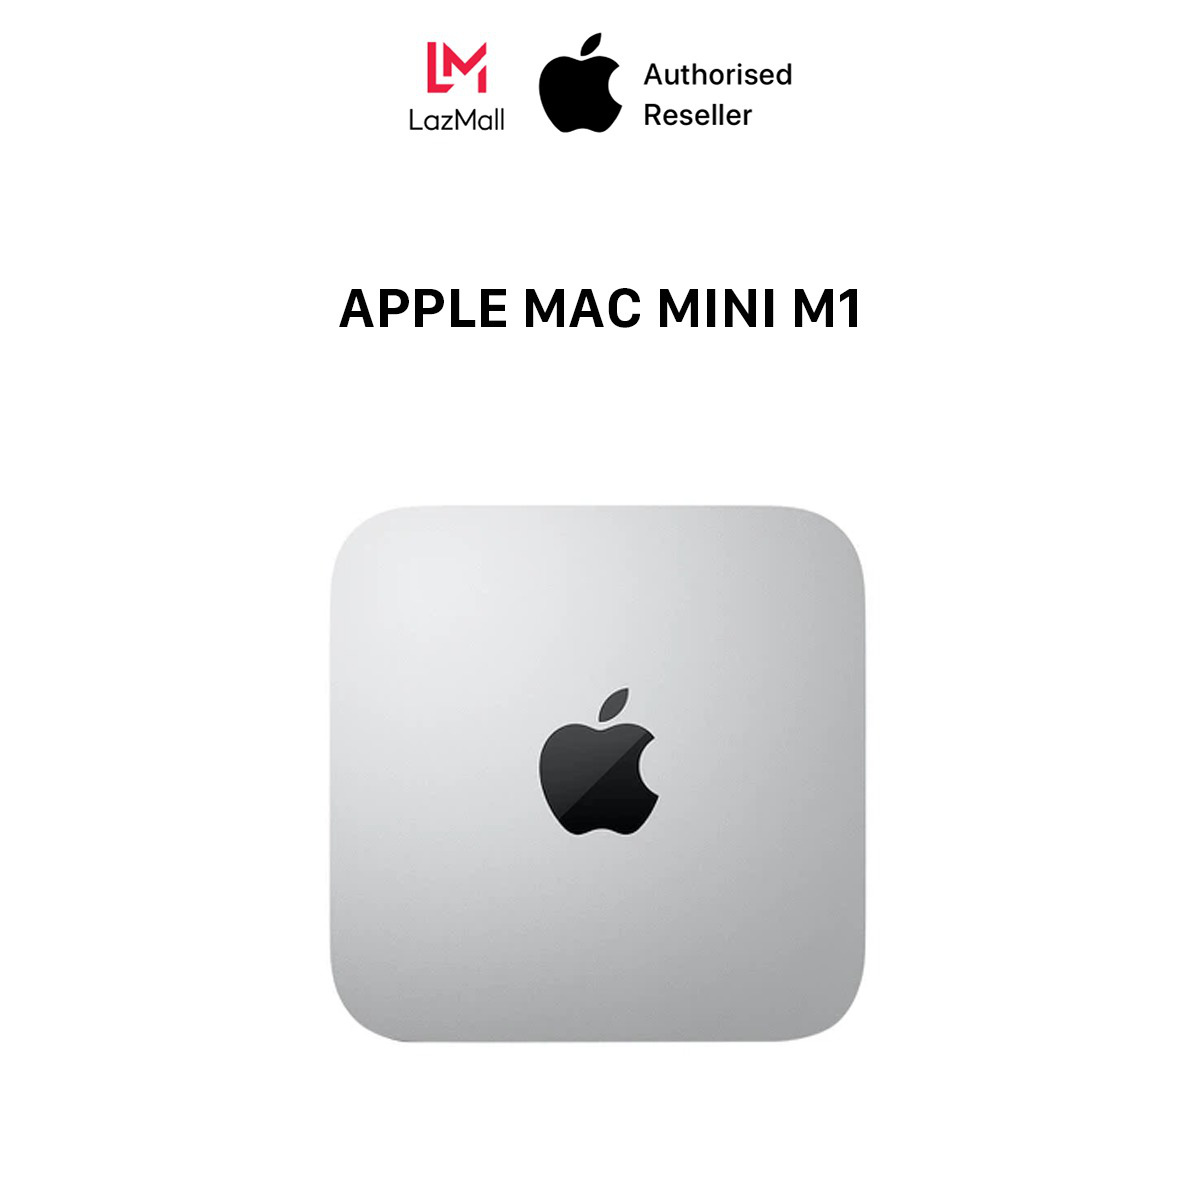 Loạt đồ công nghệ sale khủng ngày Cyber Monday, Apple Mac Mini M1 giá chỉ bằng nửa iPhone 13 Pro Max [HOT]